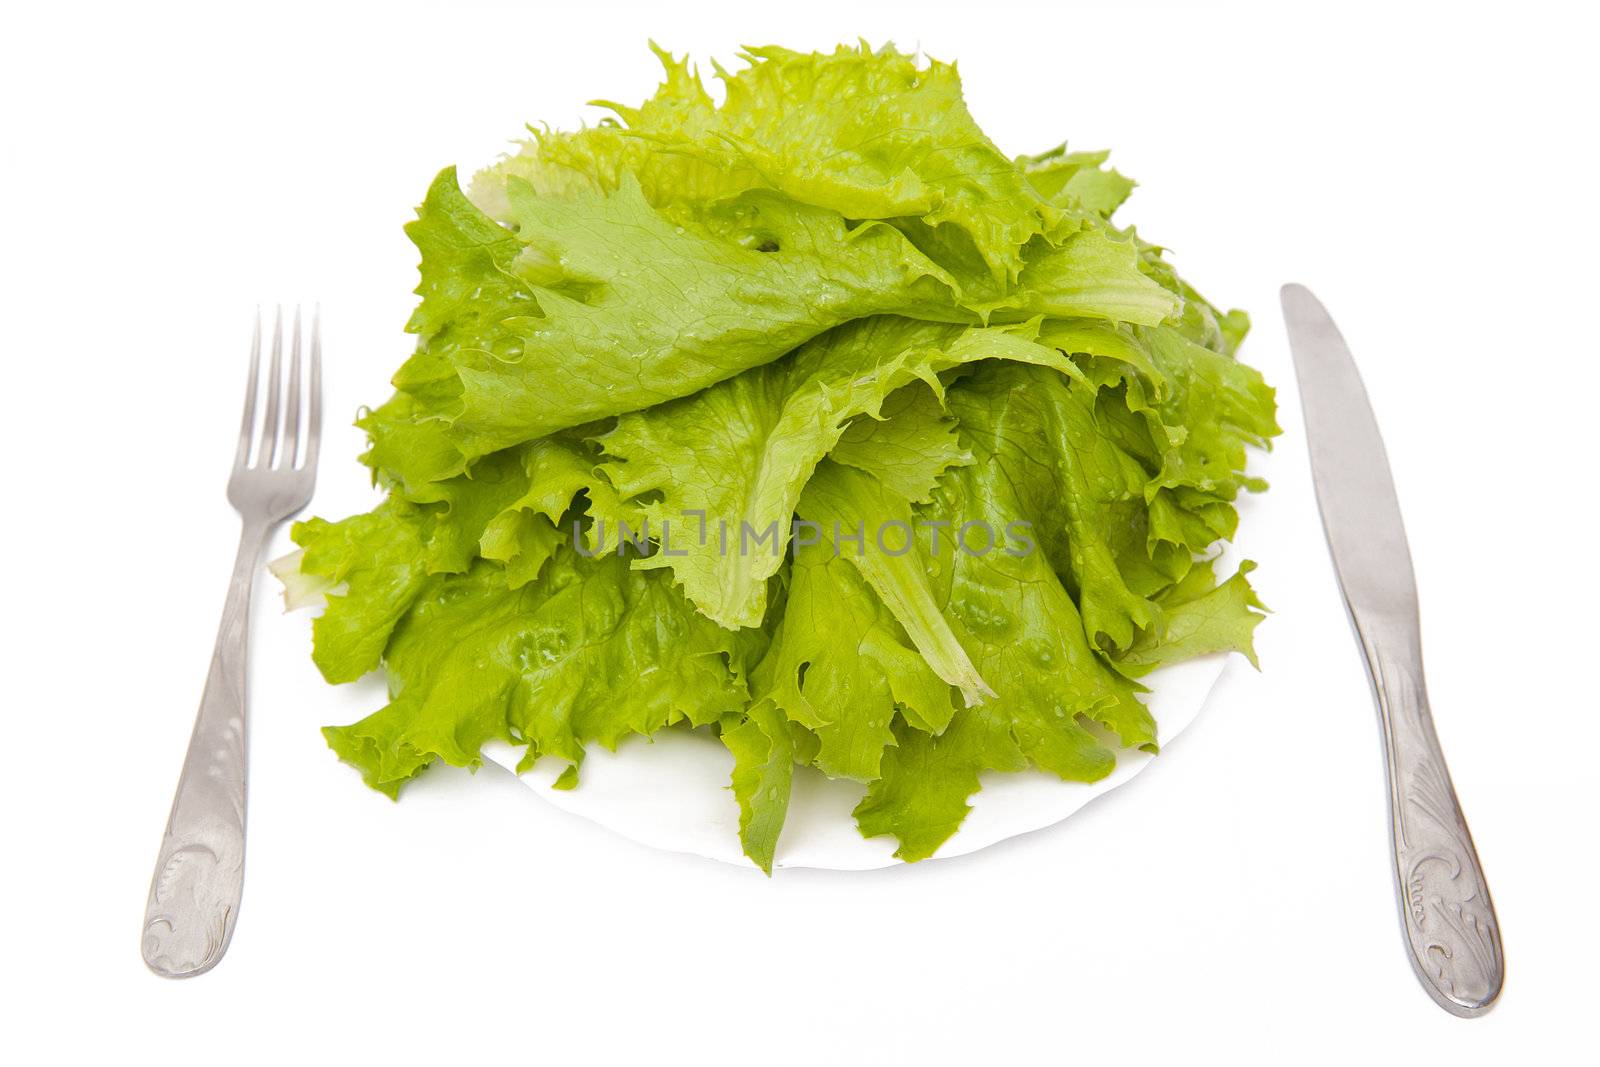 Fresh lettuce on the white plate